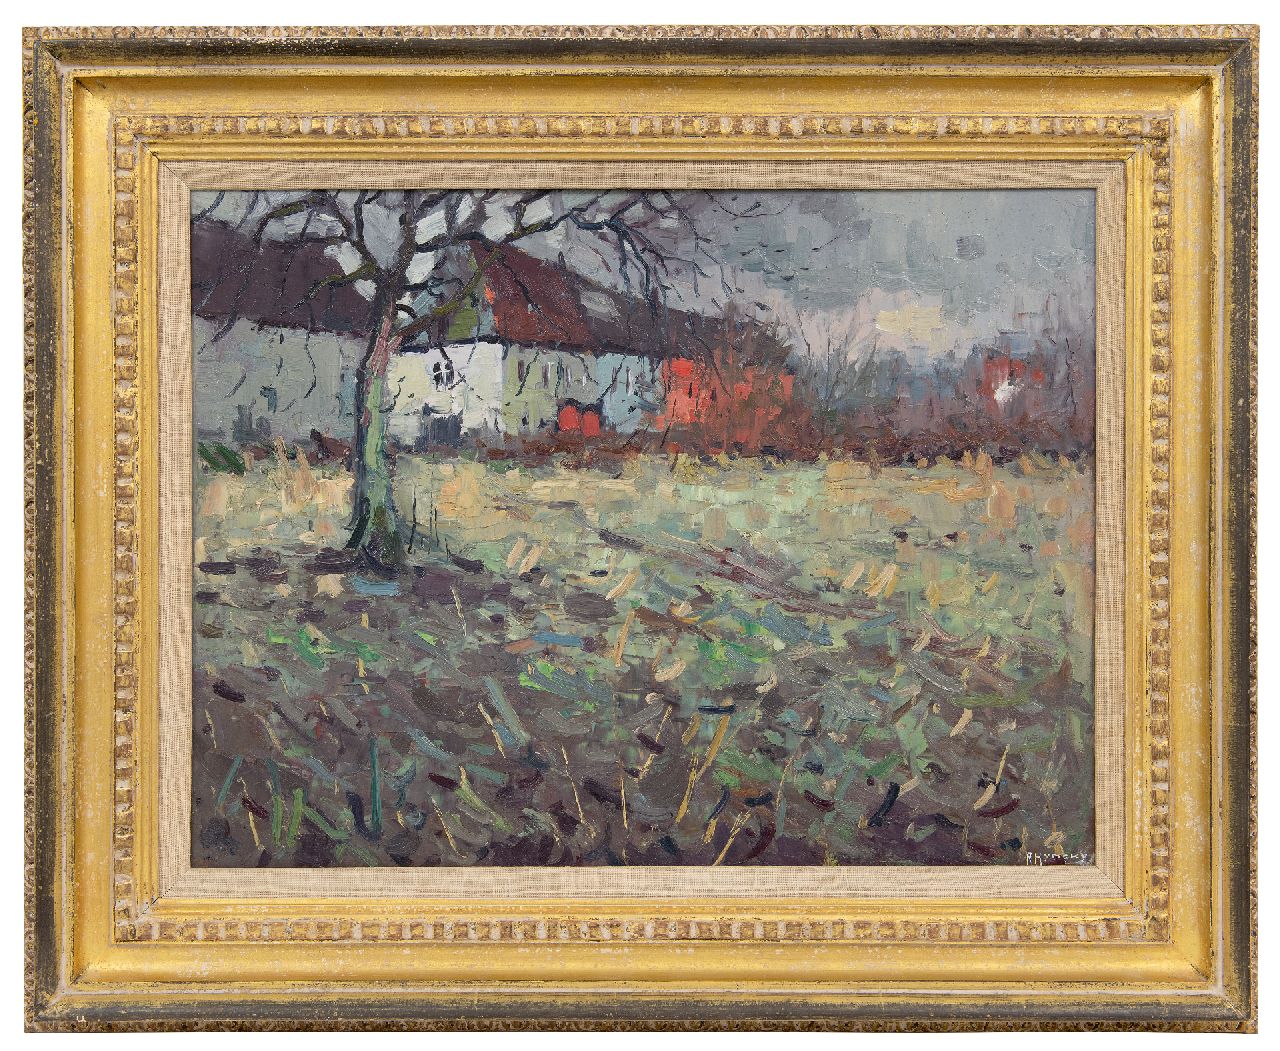 Hynckes R.  | Raoul Hynckes | Schilderijen te koop aangeboden | Audergem bij Brussel, olieverf op paneel 42,1 x 55,8 cm, gesigneerd rechtsonder